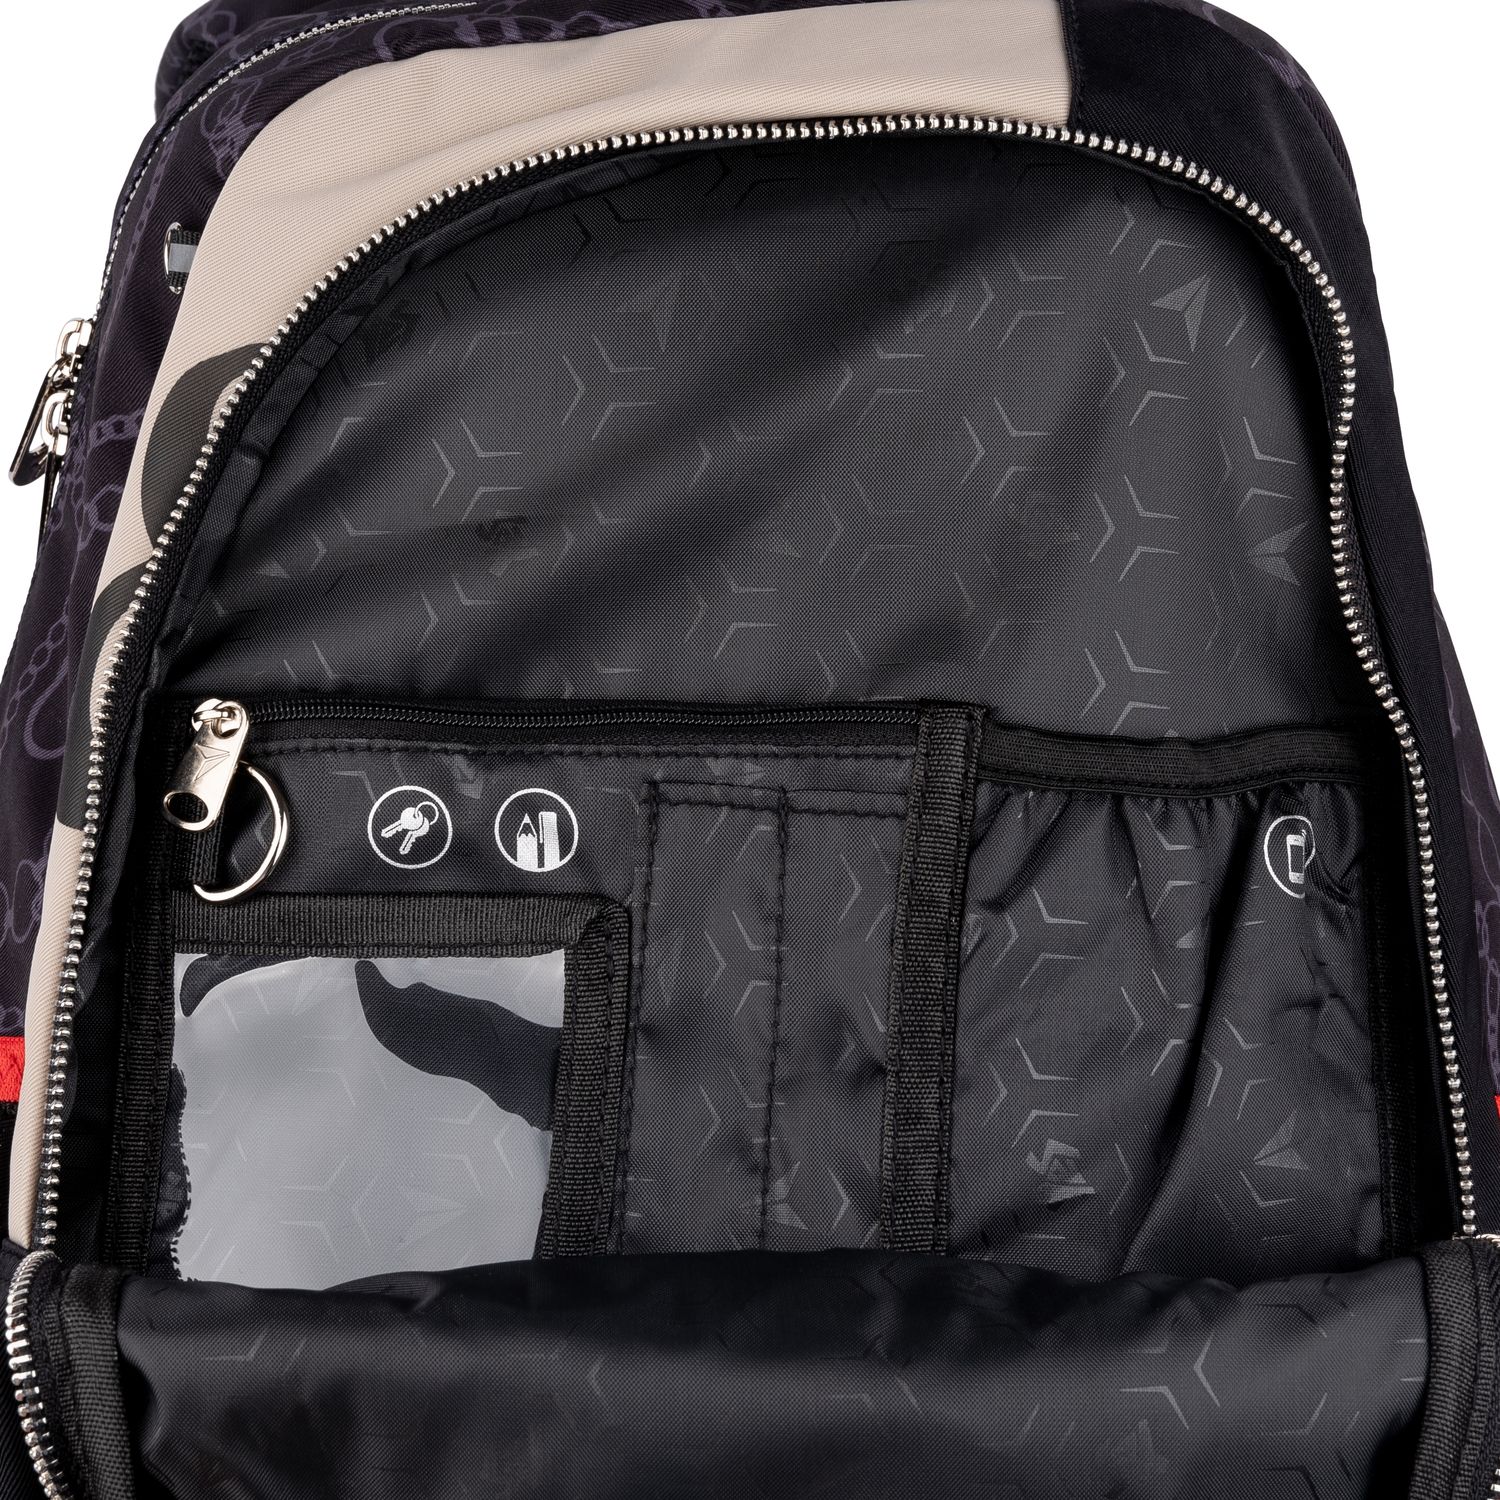 Рюкзак Yes TS-61 Infinity, серый с черным (558912) - фото 12